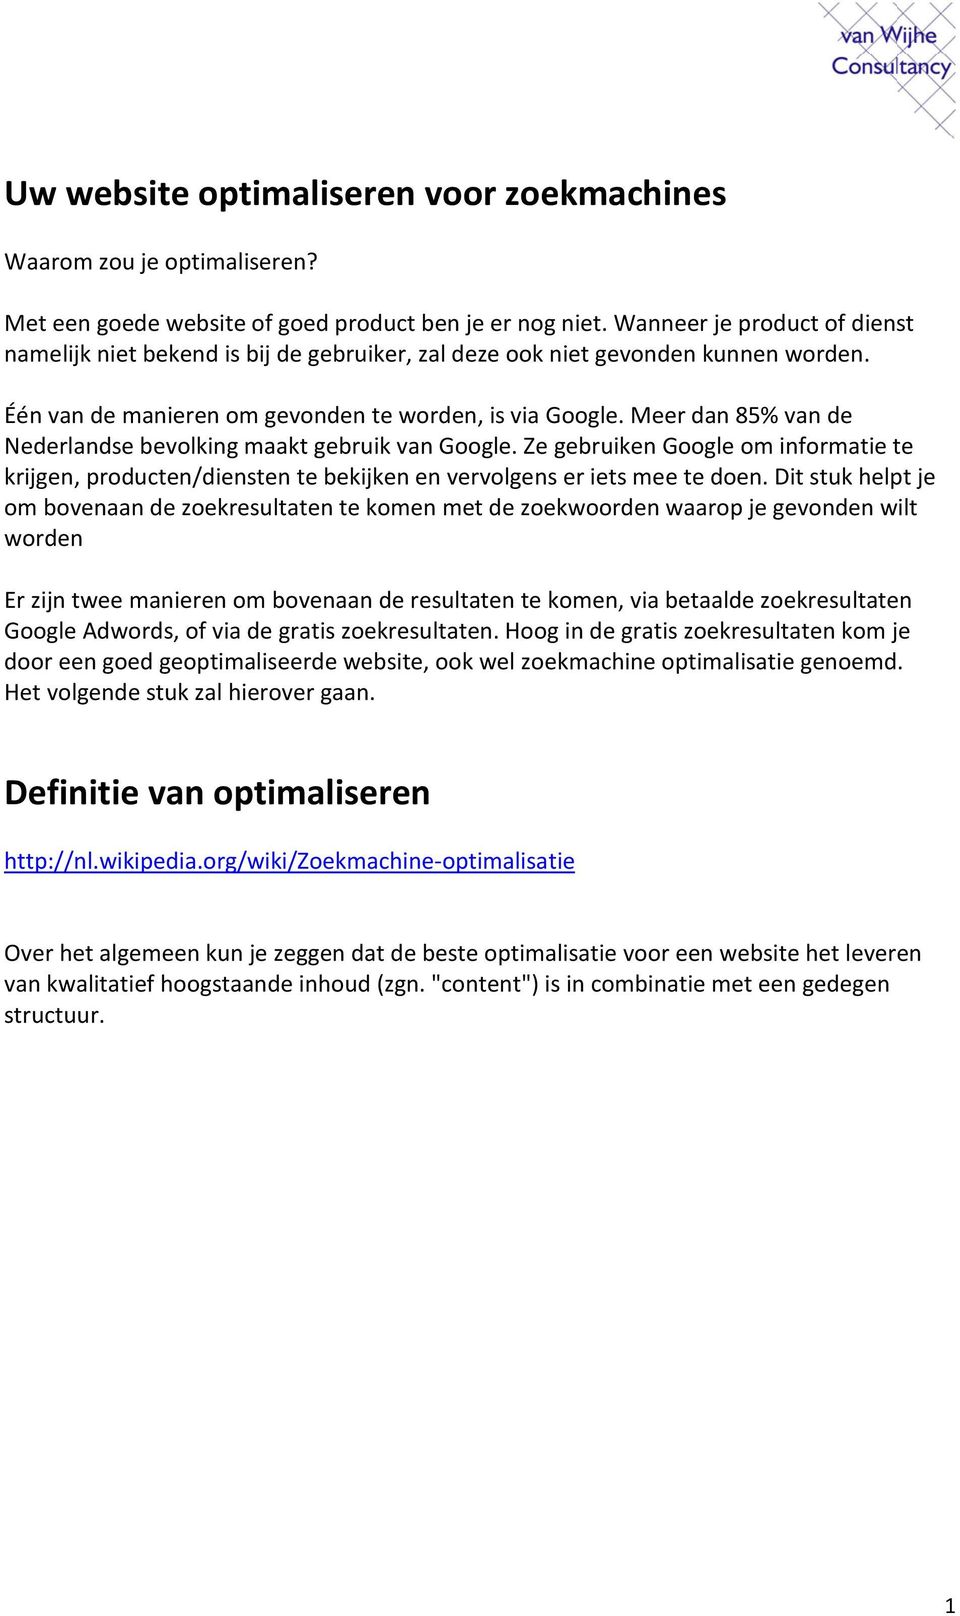 Meer dan 85% van de Nederlandse bevolking maakt gebruik van Google. Ze gebruiken Google om informatie te krijgen, producten/diensten te bekijken en vervolgens er iets mee te doen.